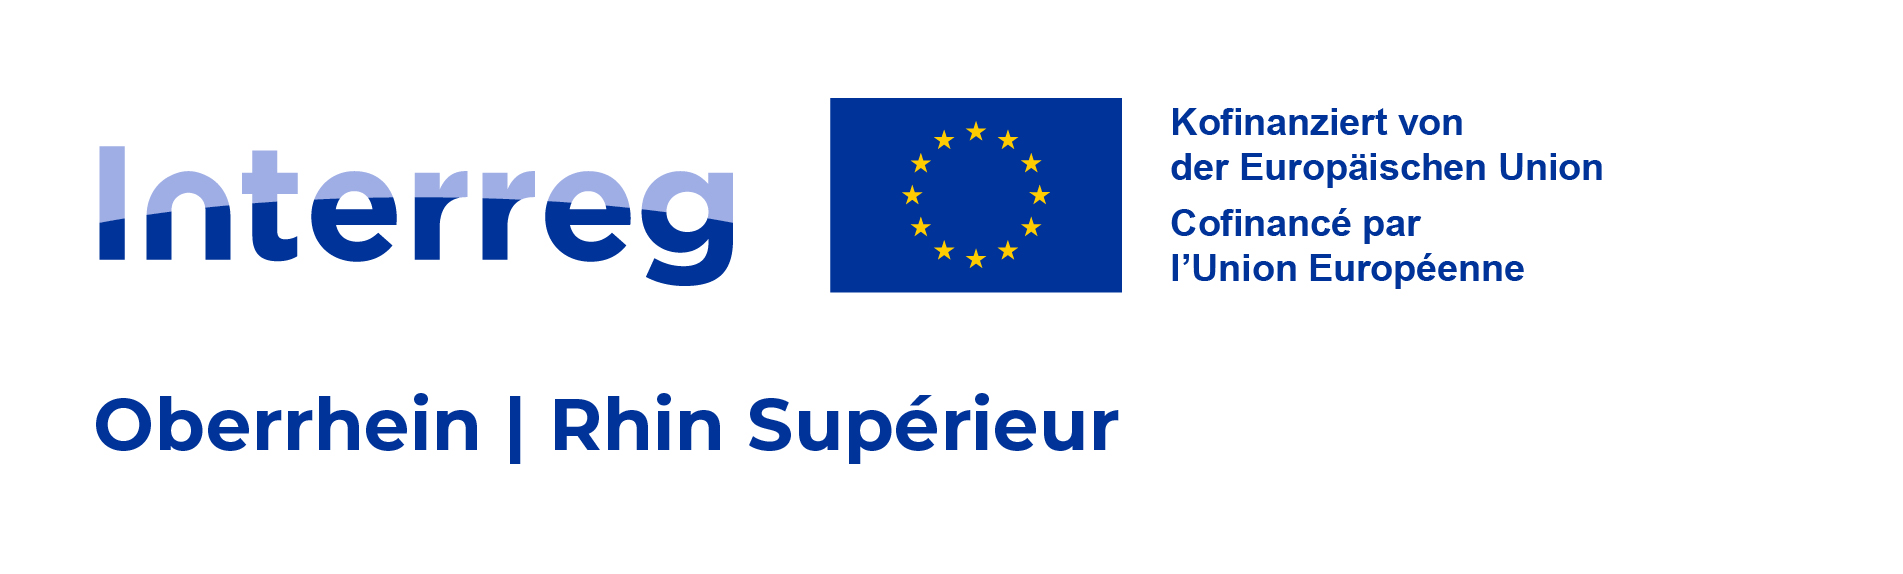 Logo-Interreg-Oberrhein-Rhin-Sup_RGB_Farbfassung-auf-Weiss-Hauptversion.jpg